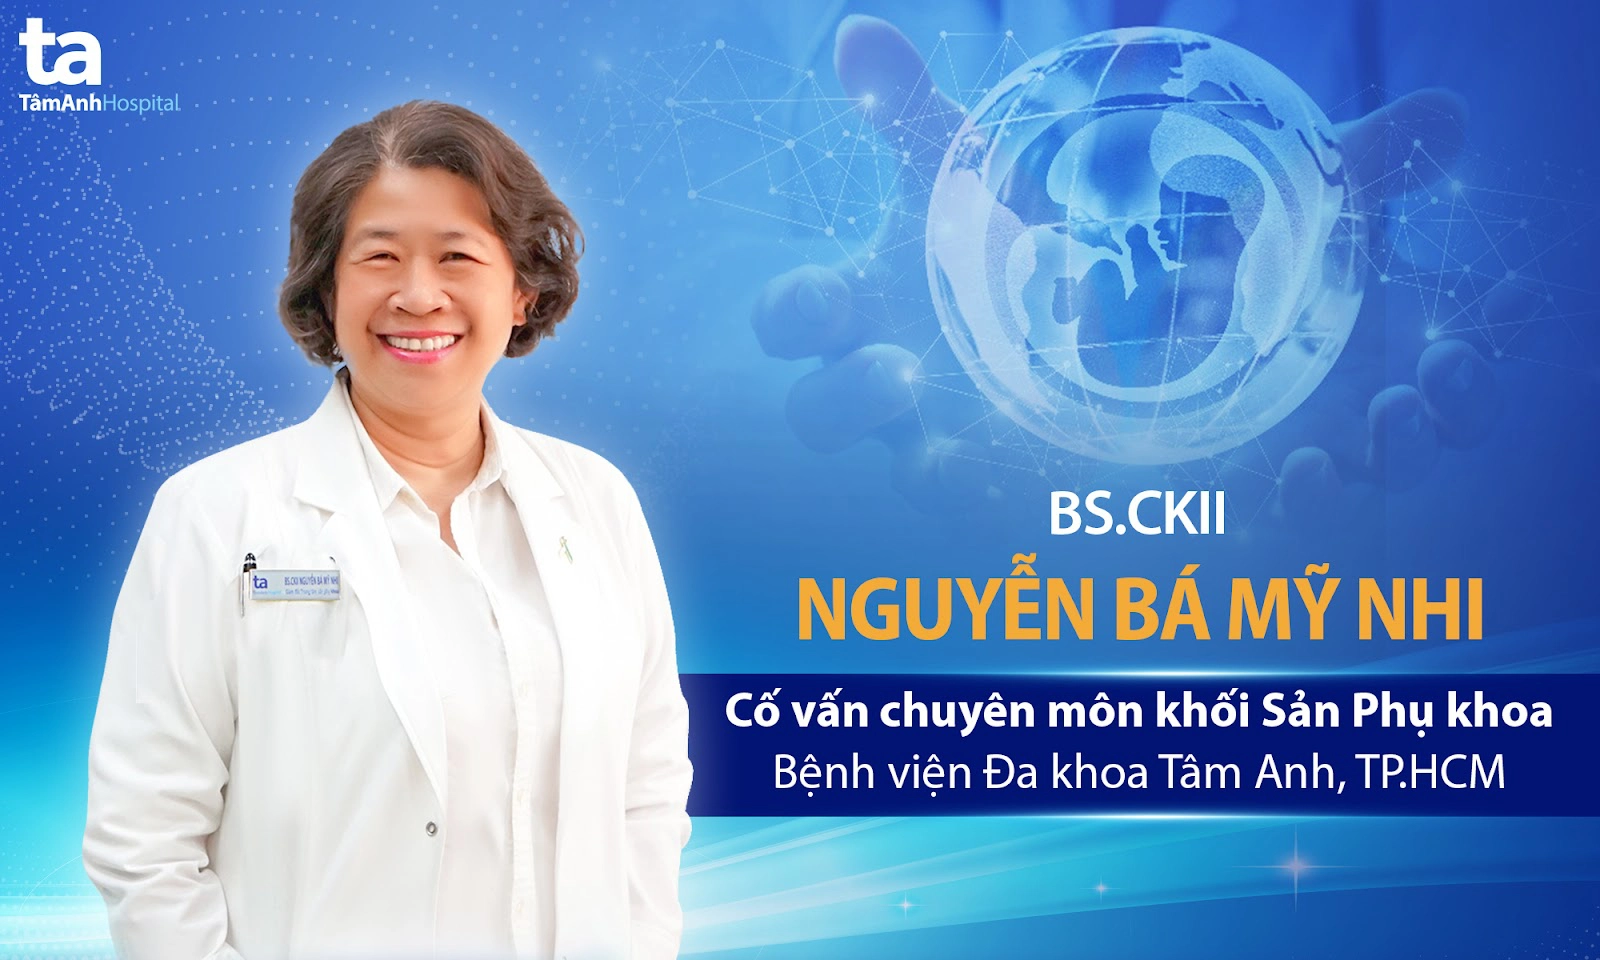 Phòng khám sản phụ khoa bác sĩ Nguyễn Bá Mỹ Nhi tại TPHCM có tốt không?